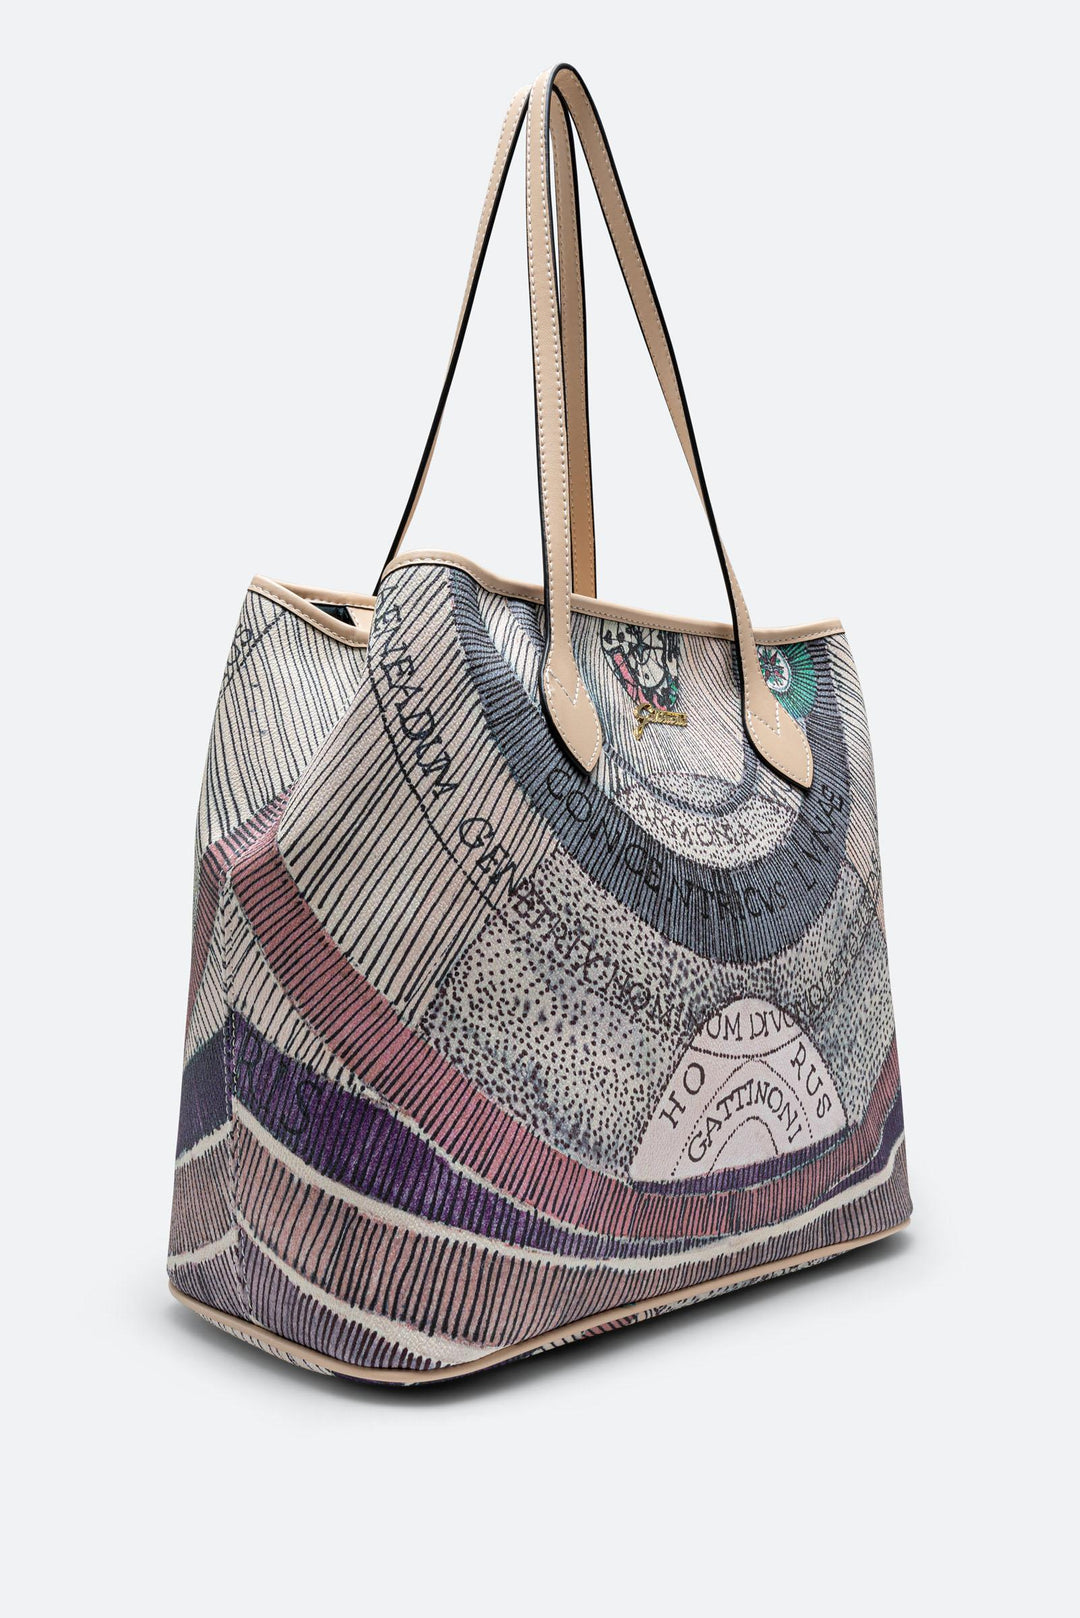 Shopping bag media Planetarium Watercolor